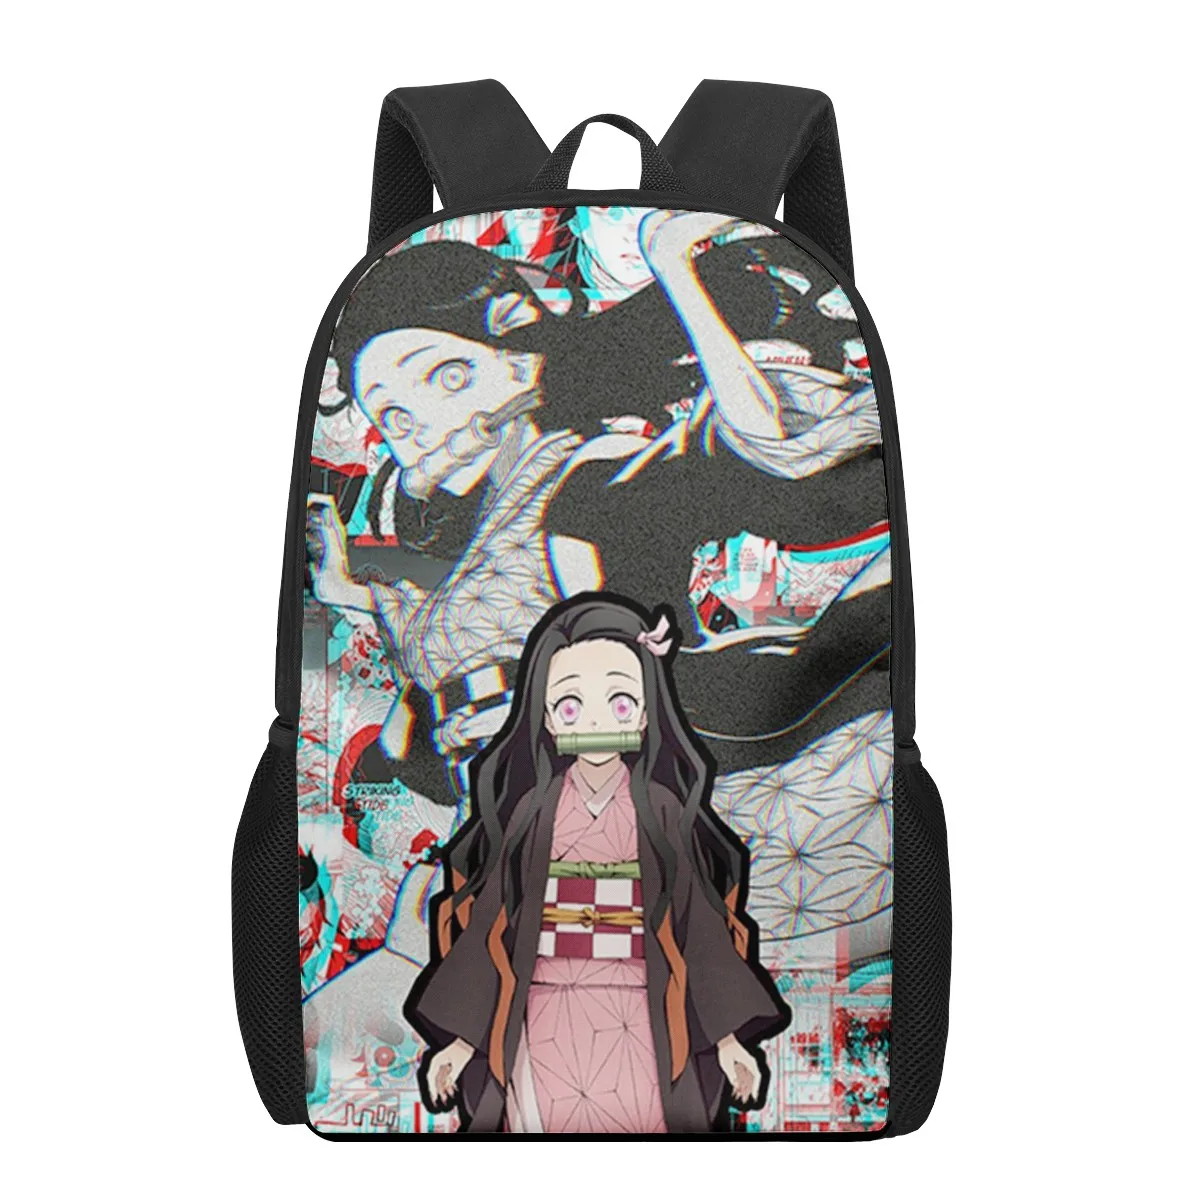 Рюкзак для девочек начальной школы с 3D рисунком из аниме Kimetsu no Yaiba